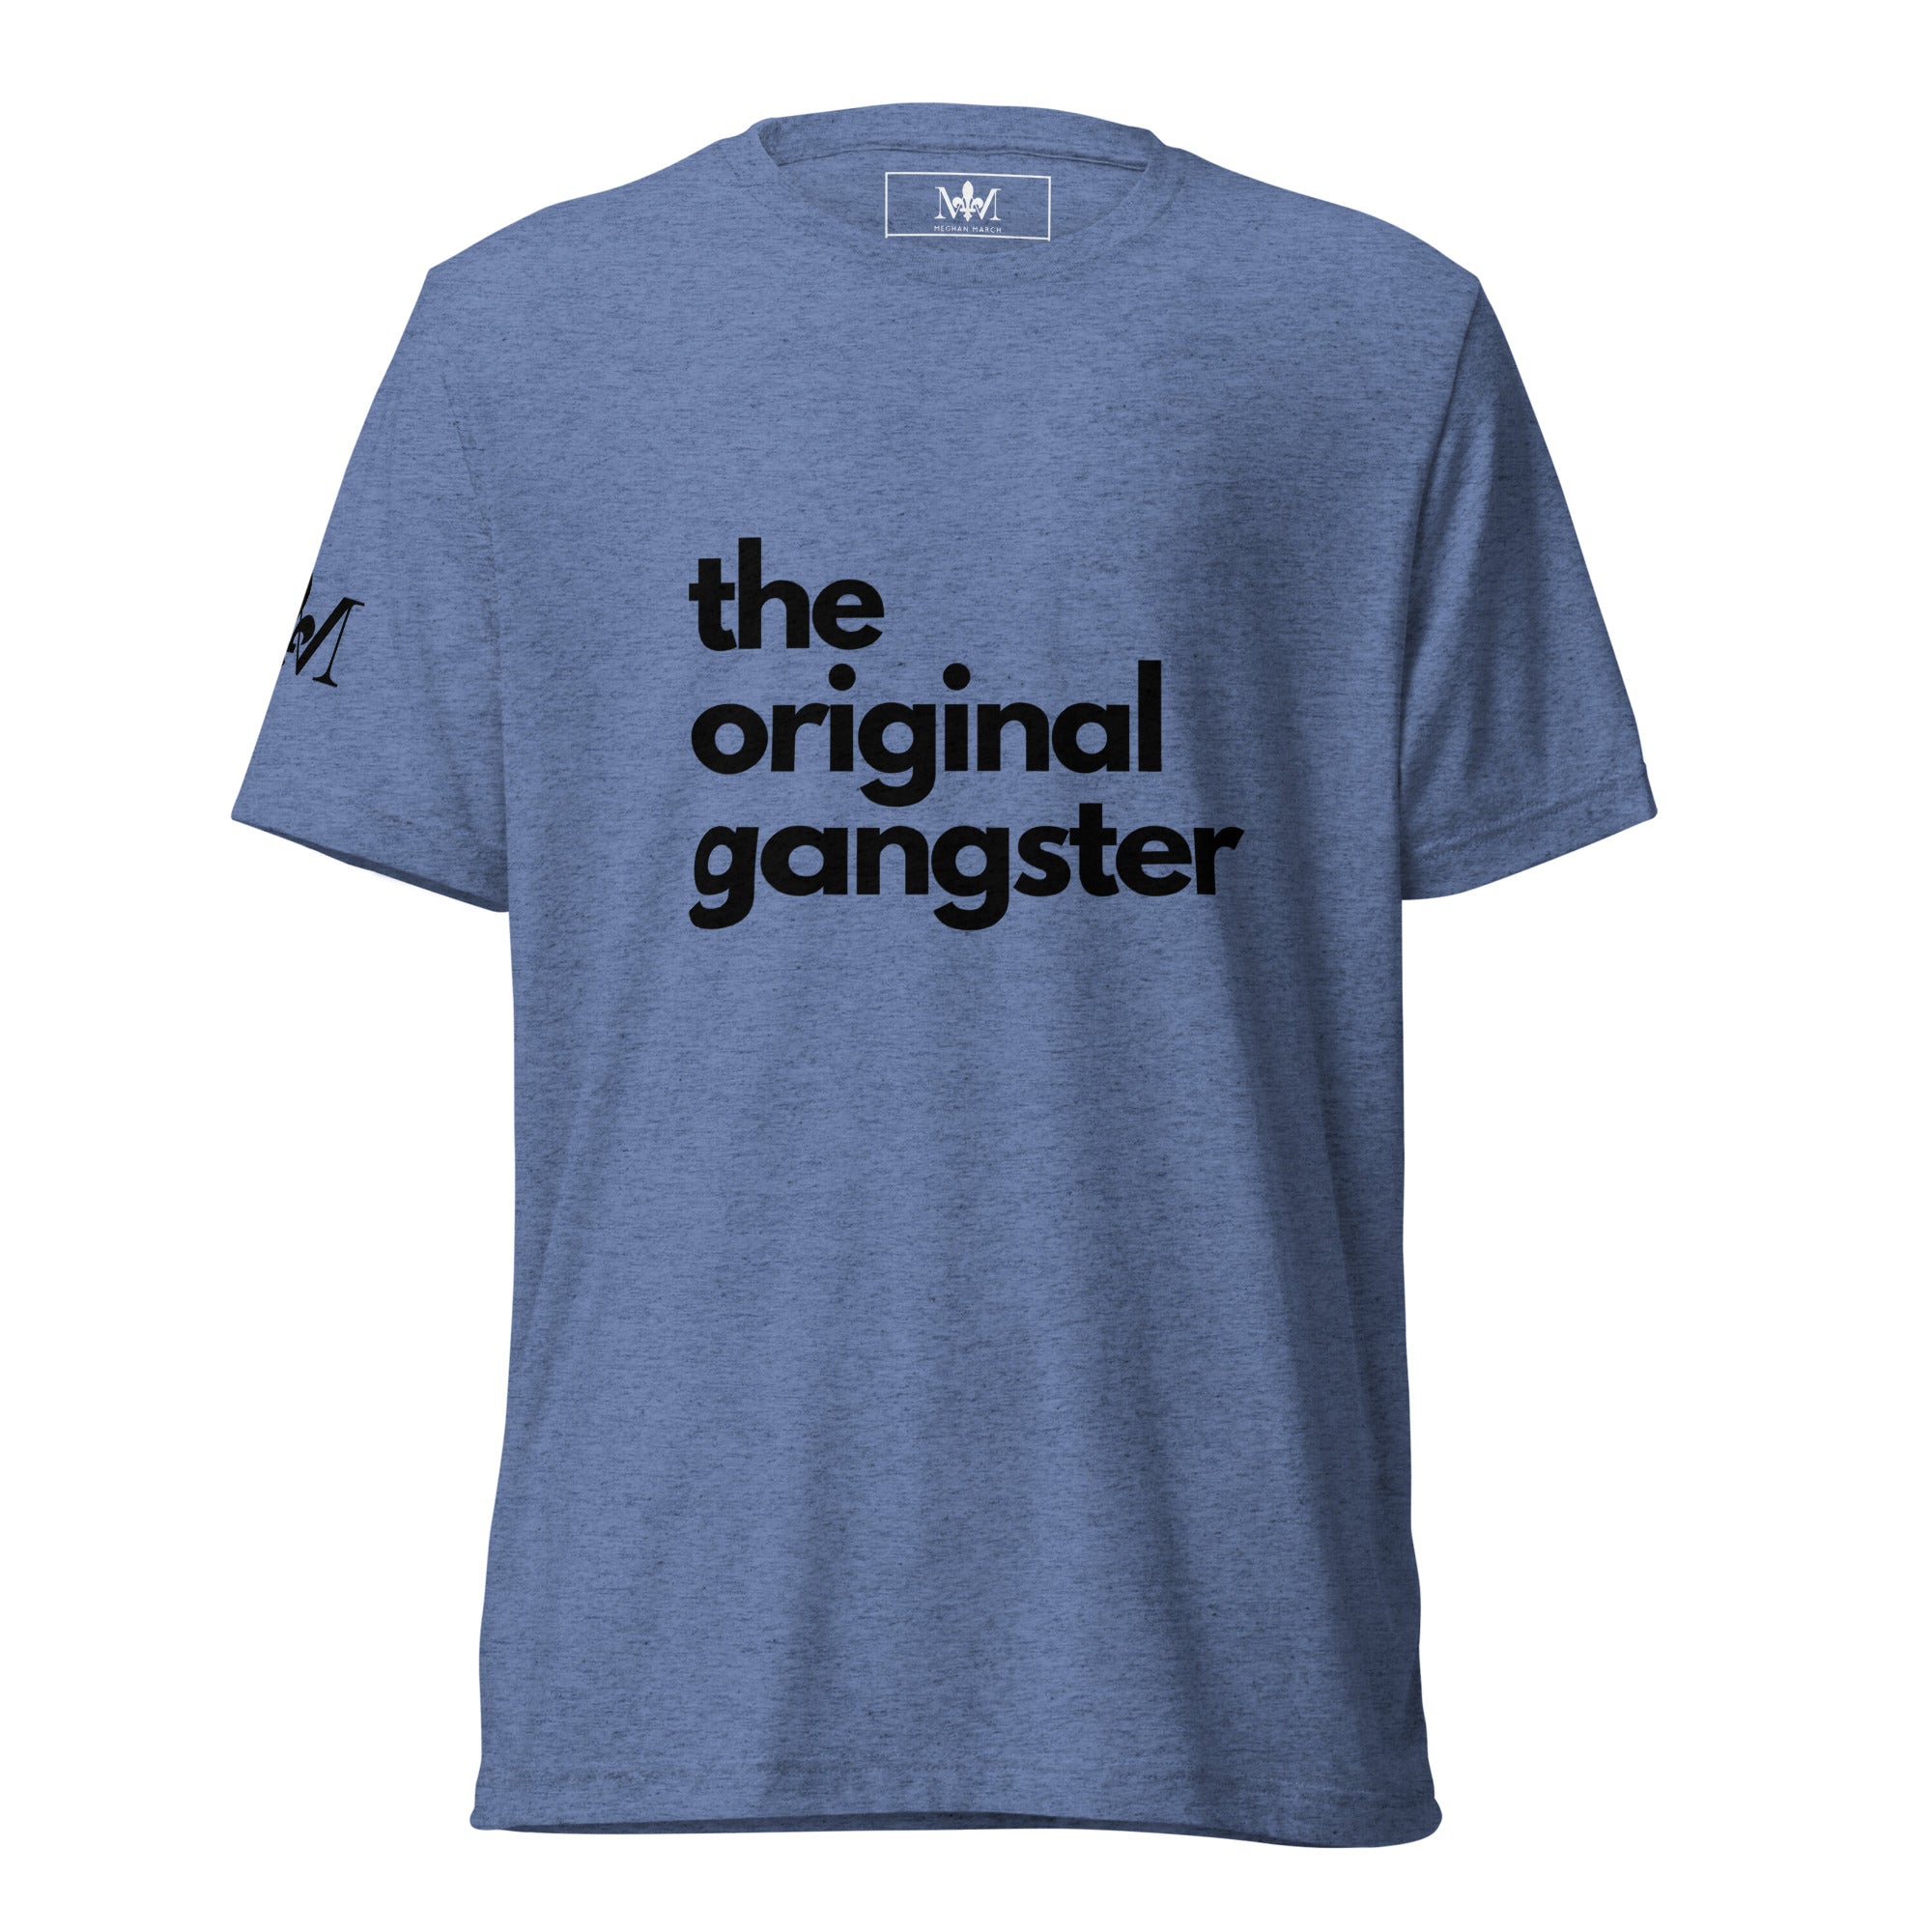 The OG T-Shirt